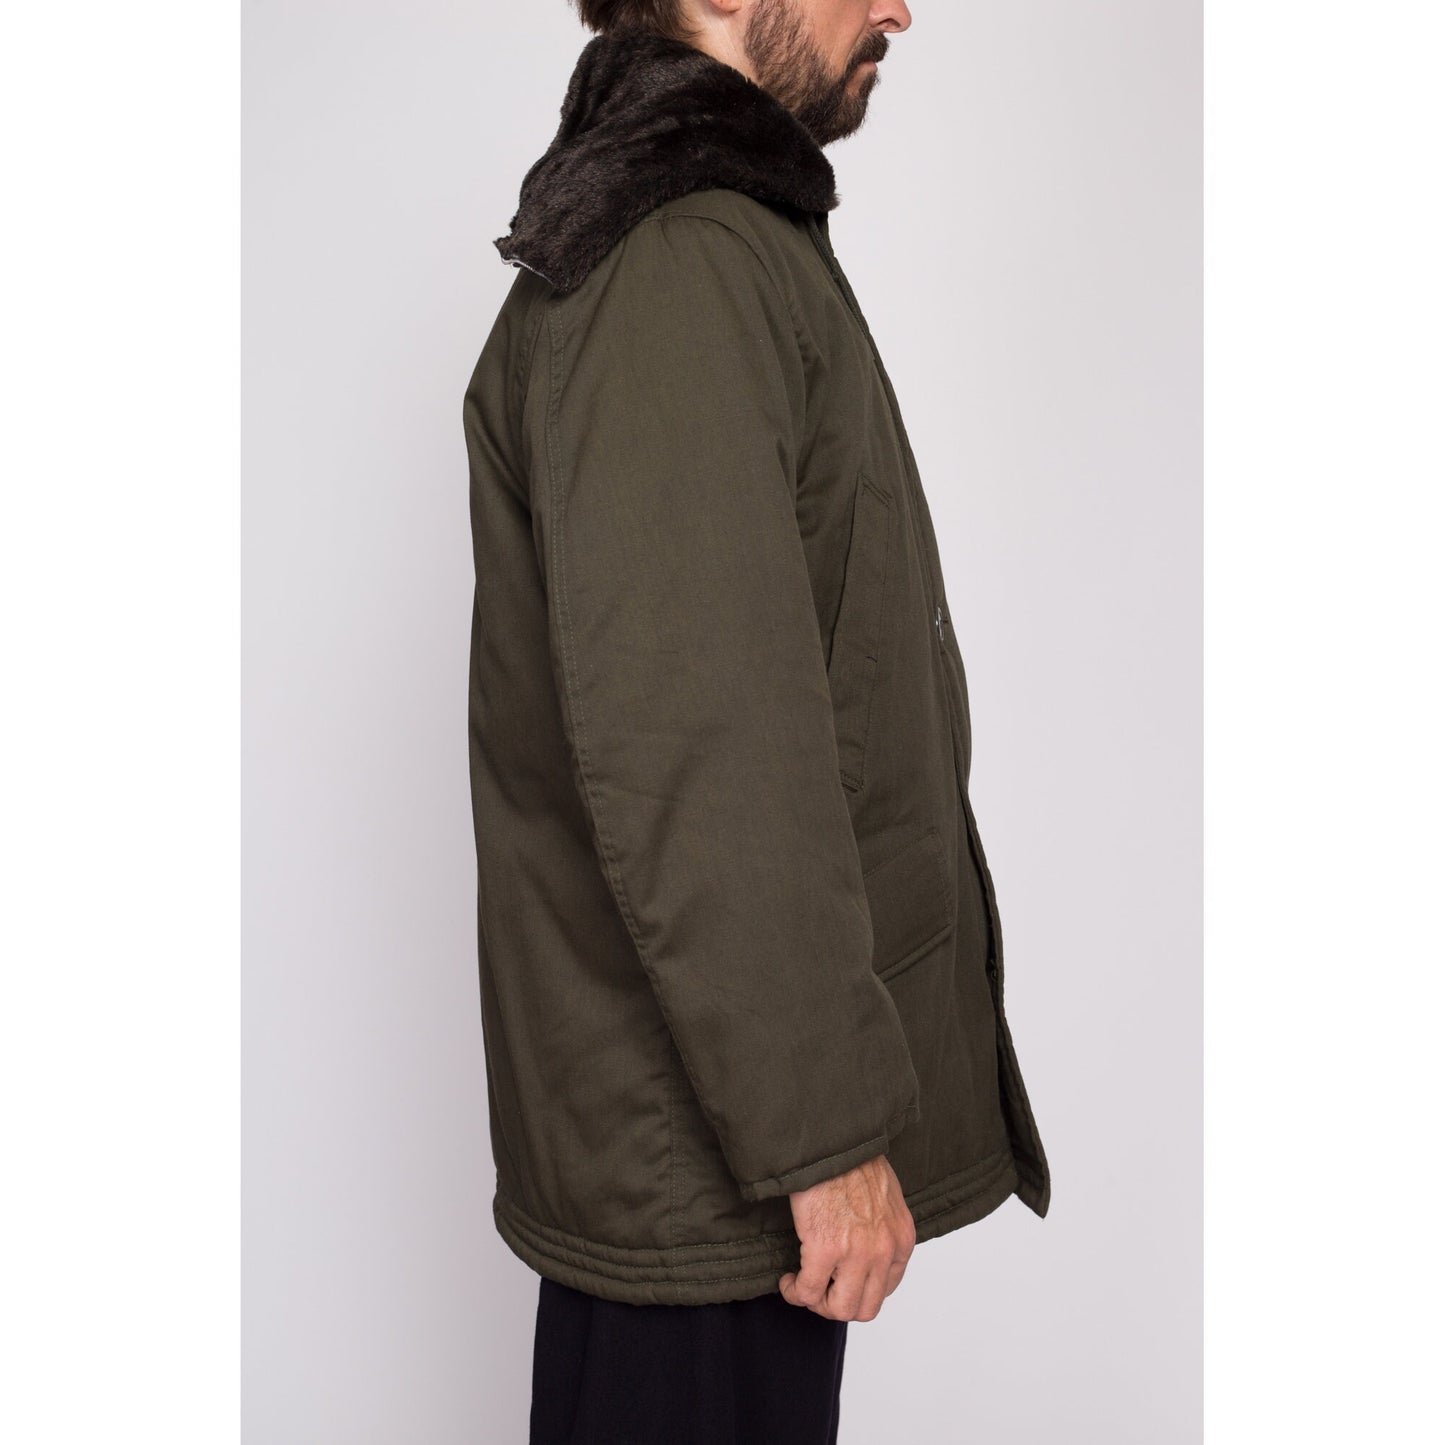 M| 80s Golden Fleece Hooded Army Green Parka Jacket - Men's Medium Short | Vintage Industrial Outerwear Split Zip Hood Oversize Coat